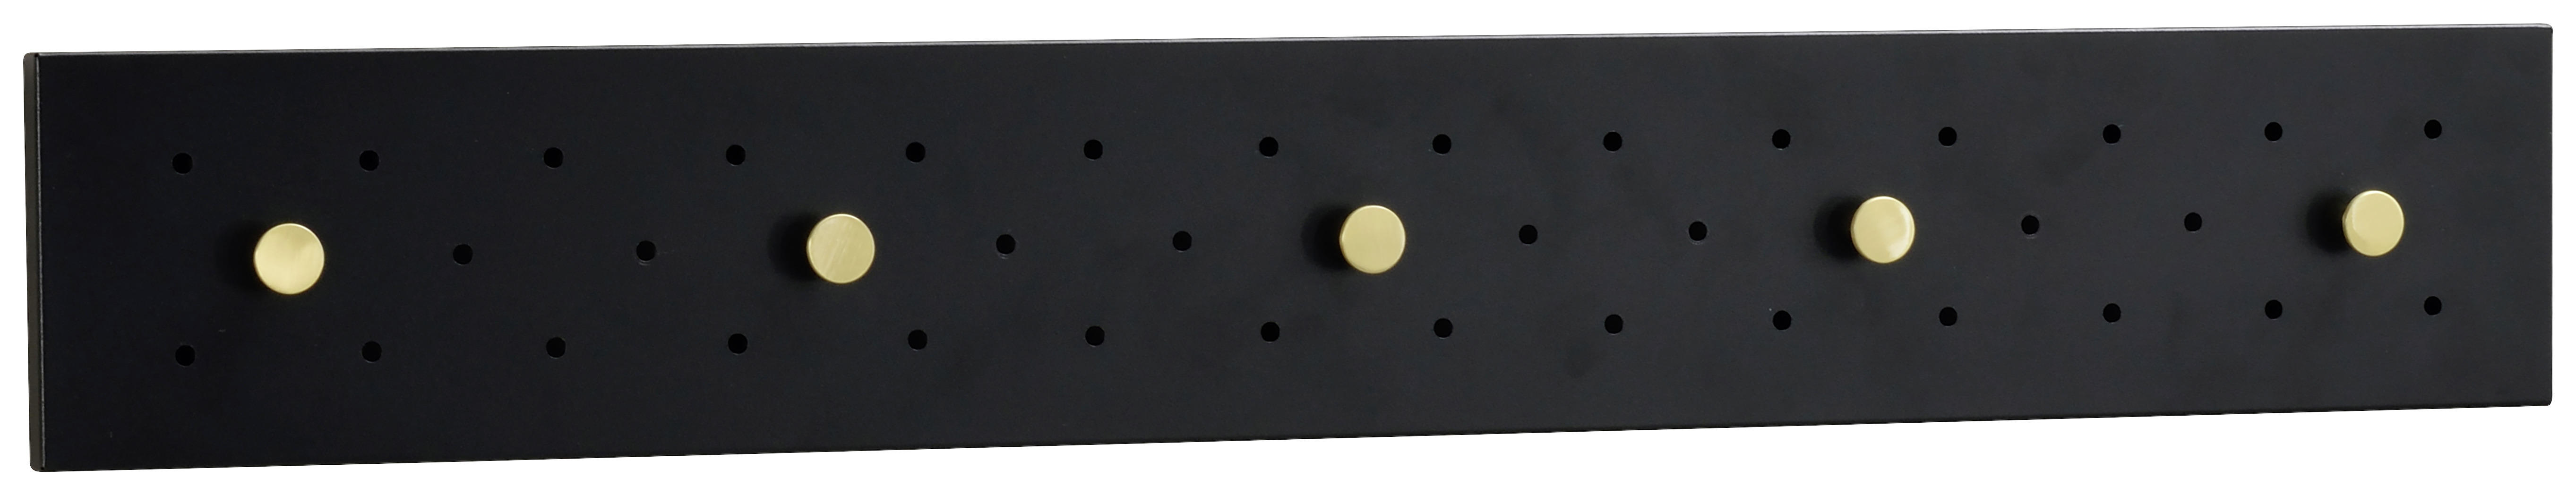 KROKLIST 80/12/1,6 cm  - svart/guldfärgad, Klassisk, metall (80/12/1,6cm) - Rowico